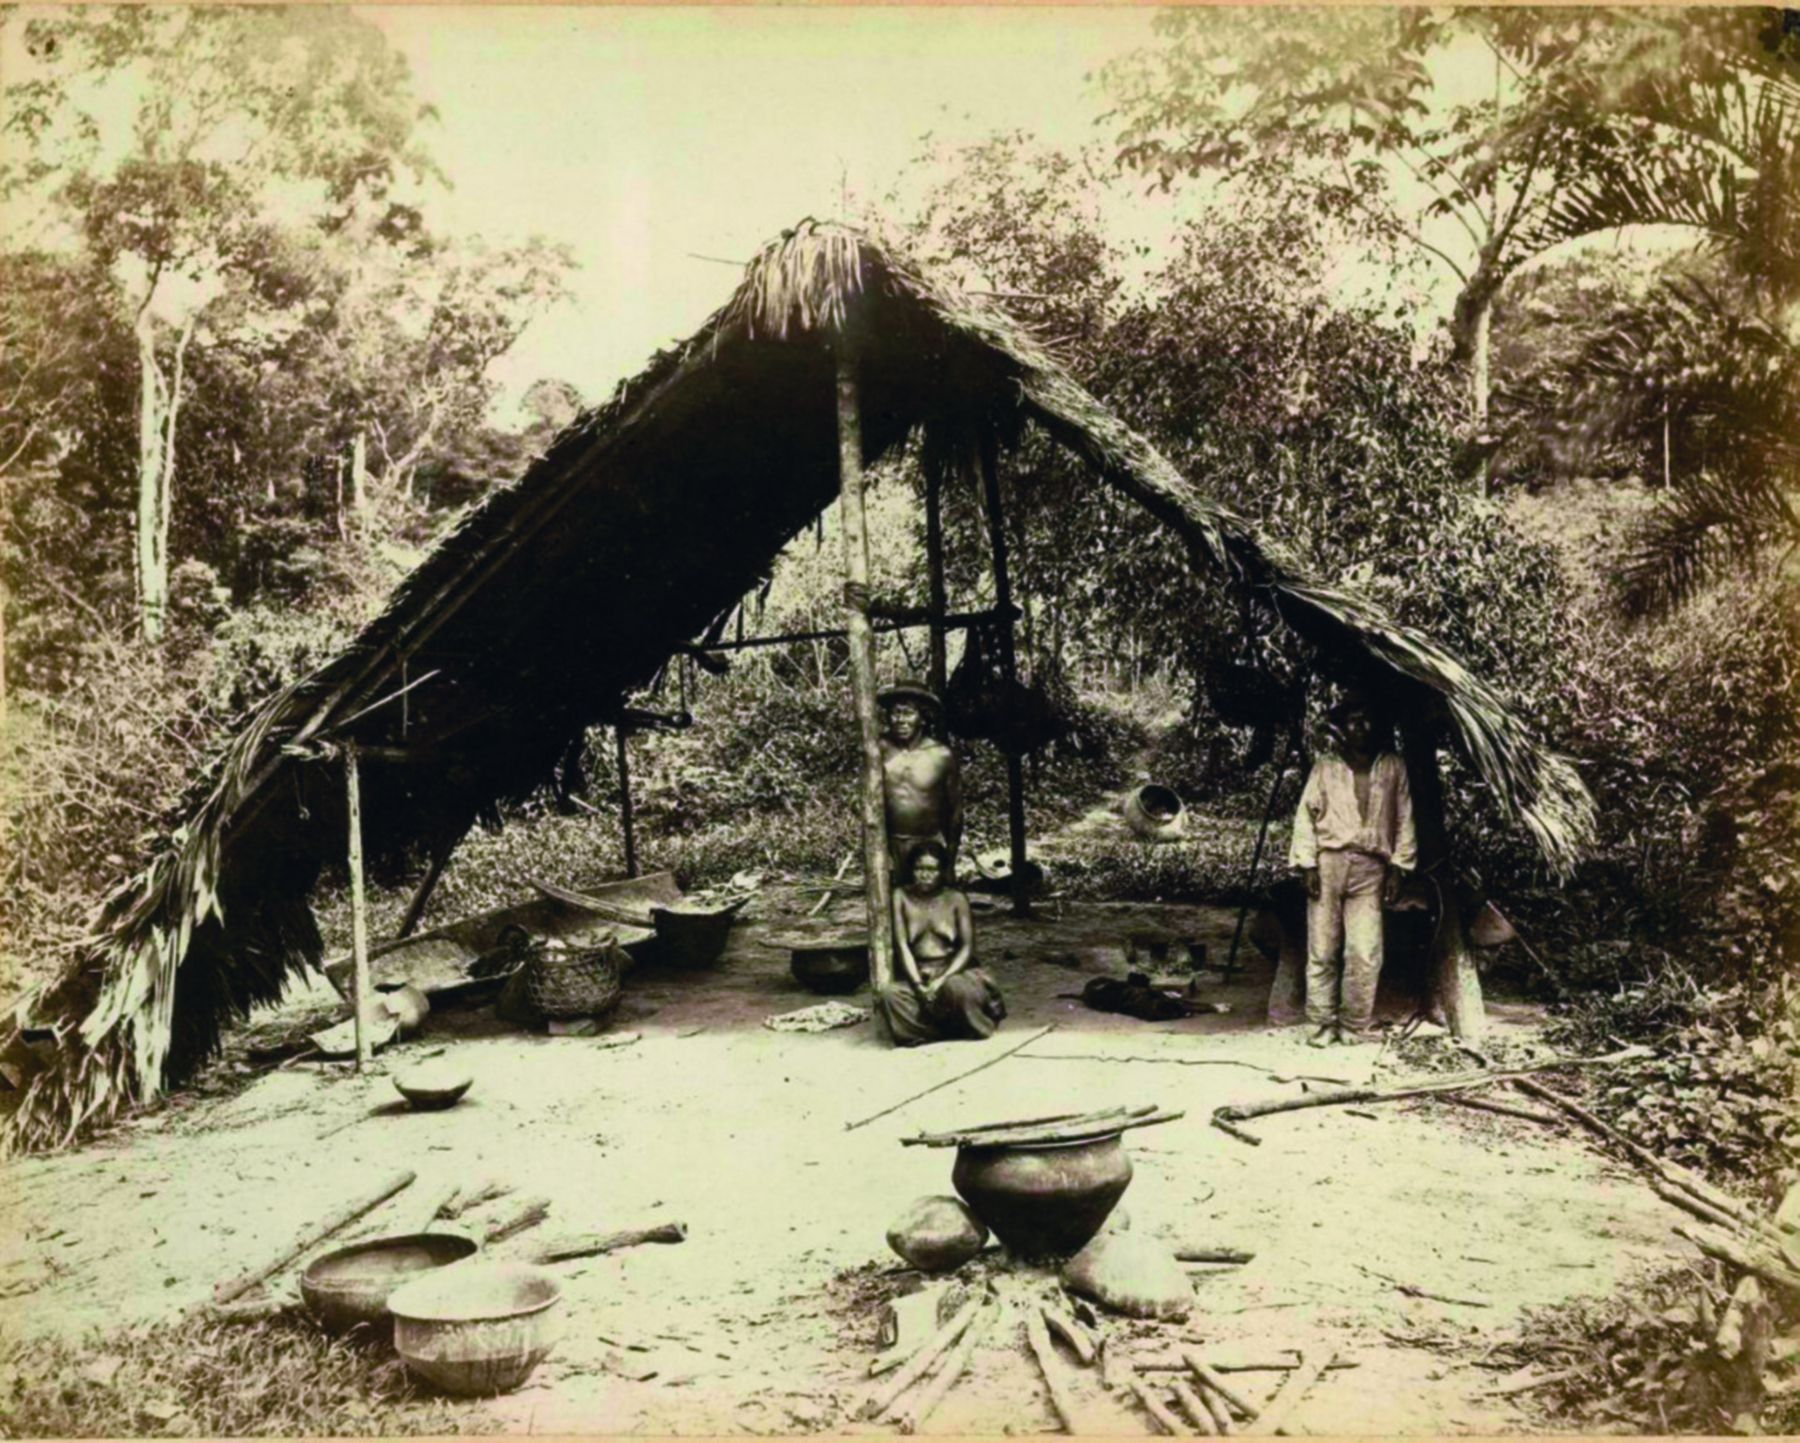 Fotografia em preto e branco. Indígenas dentro de uma cabana com teto triangular, feito de palha e madeira. Ao redor deles, pelo chão, muitos objetos, panelas e utensílios. Ao fundo, mata fechada.